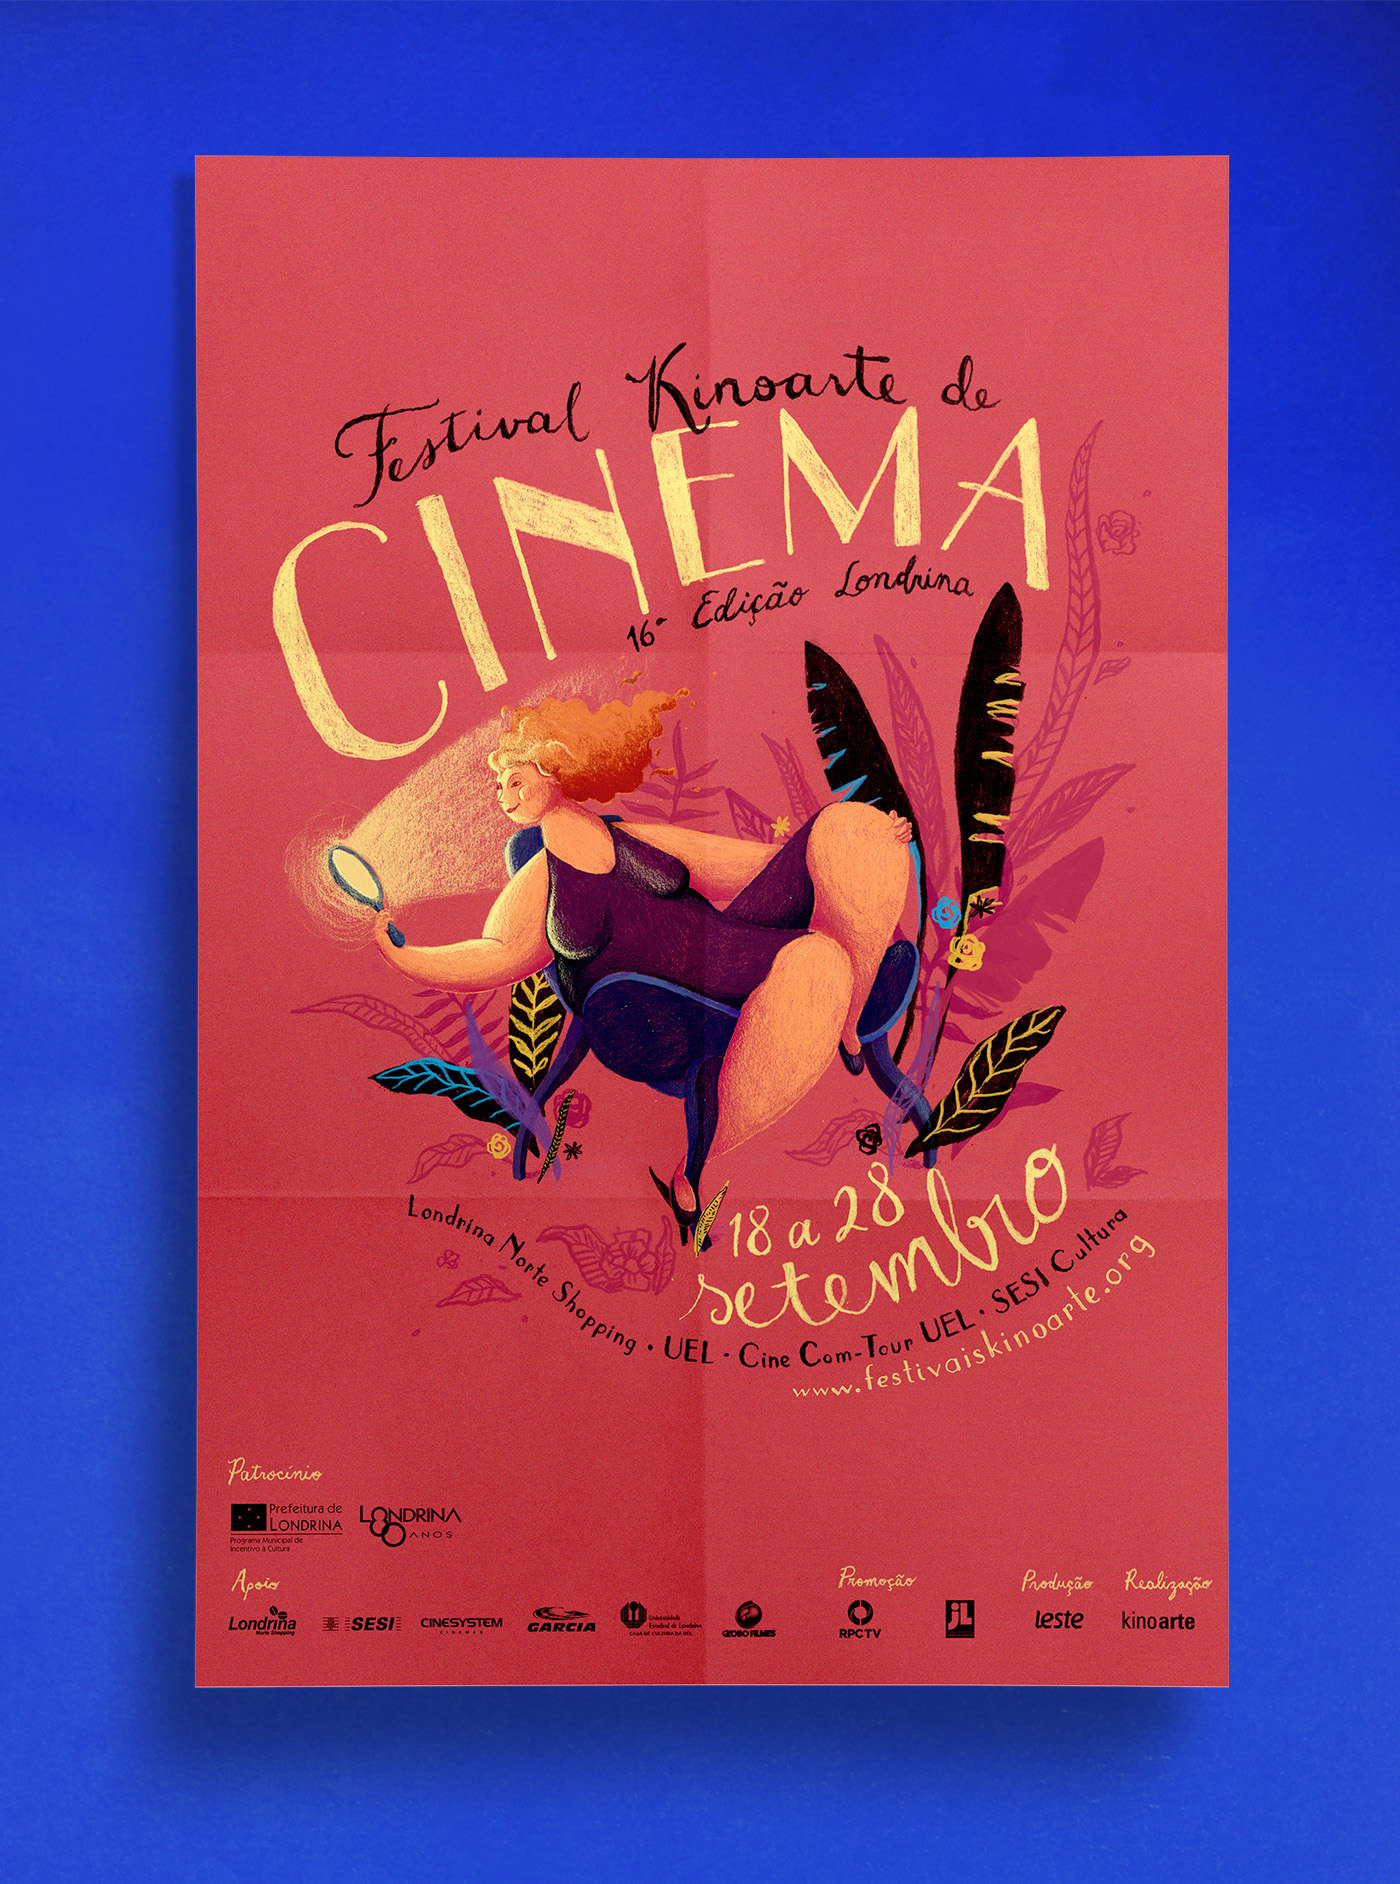 16º Festival Kinoarte de Cinema